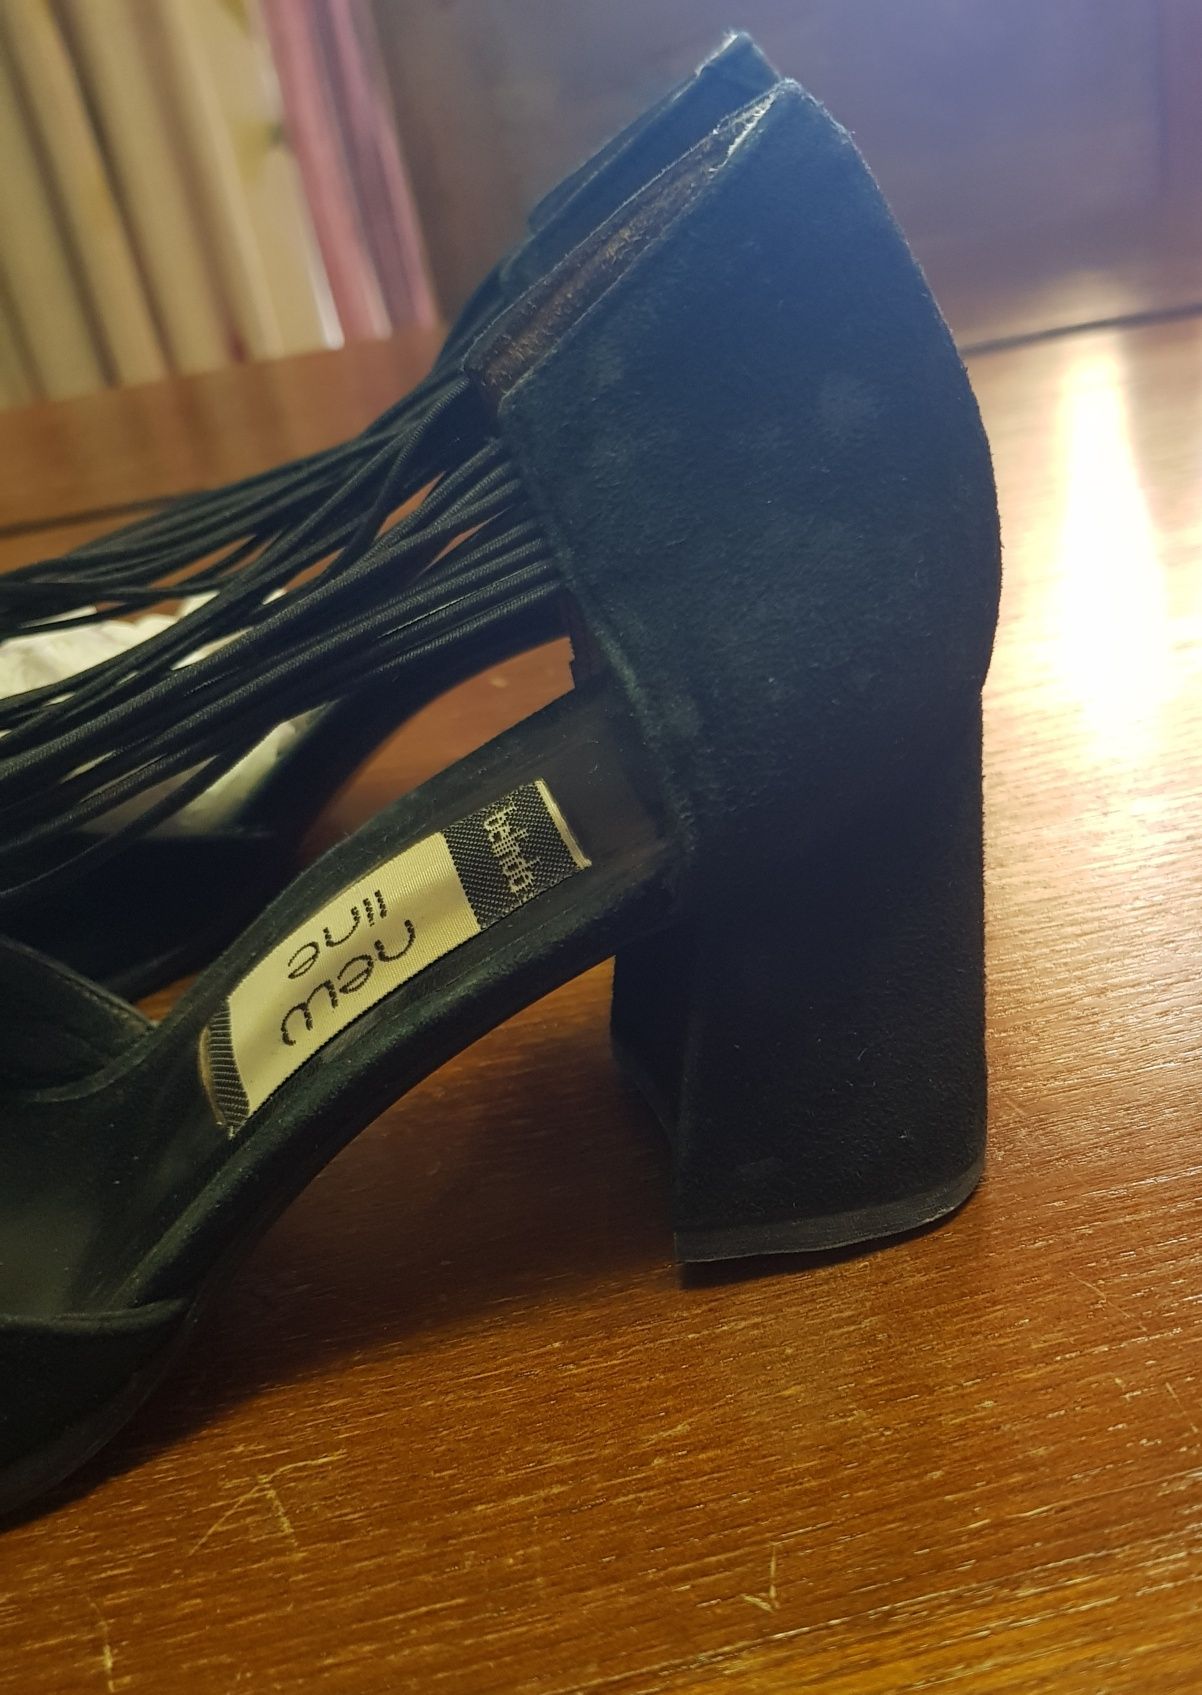 Sapatos pretos de Senhora